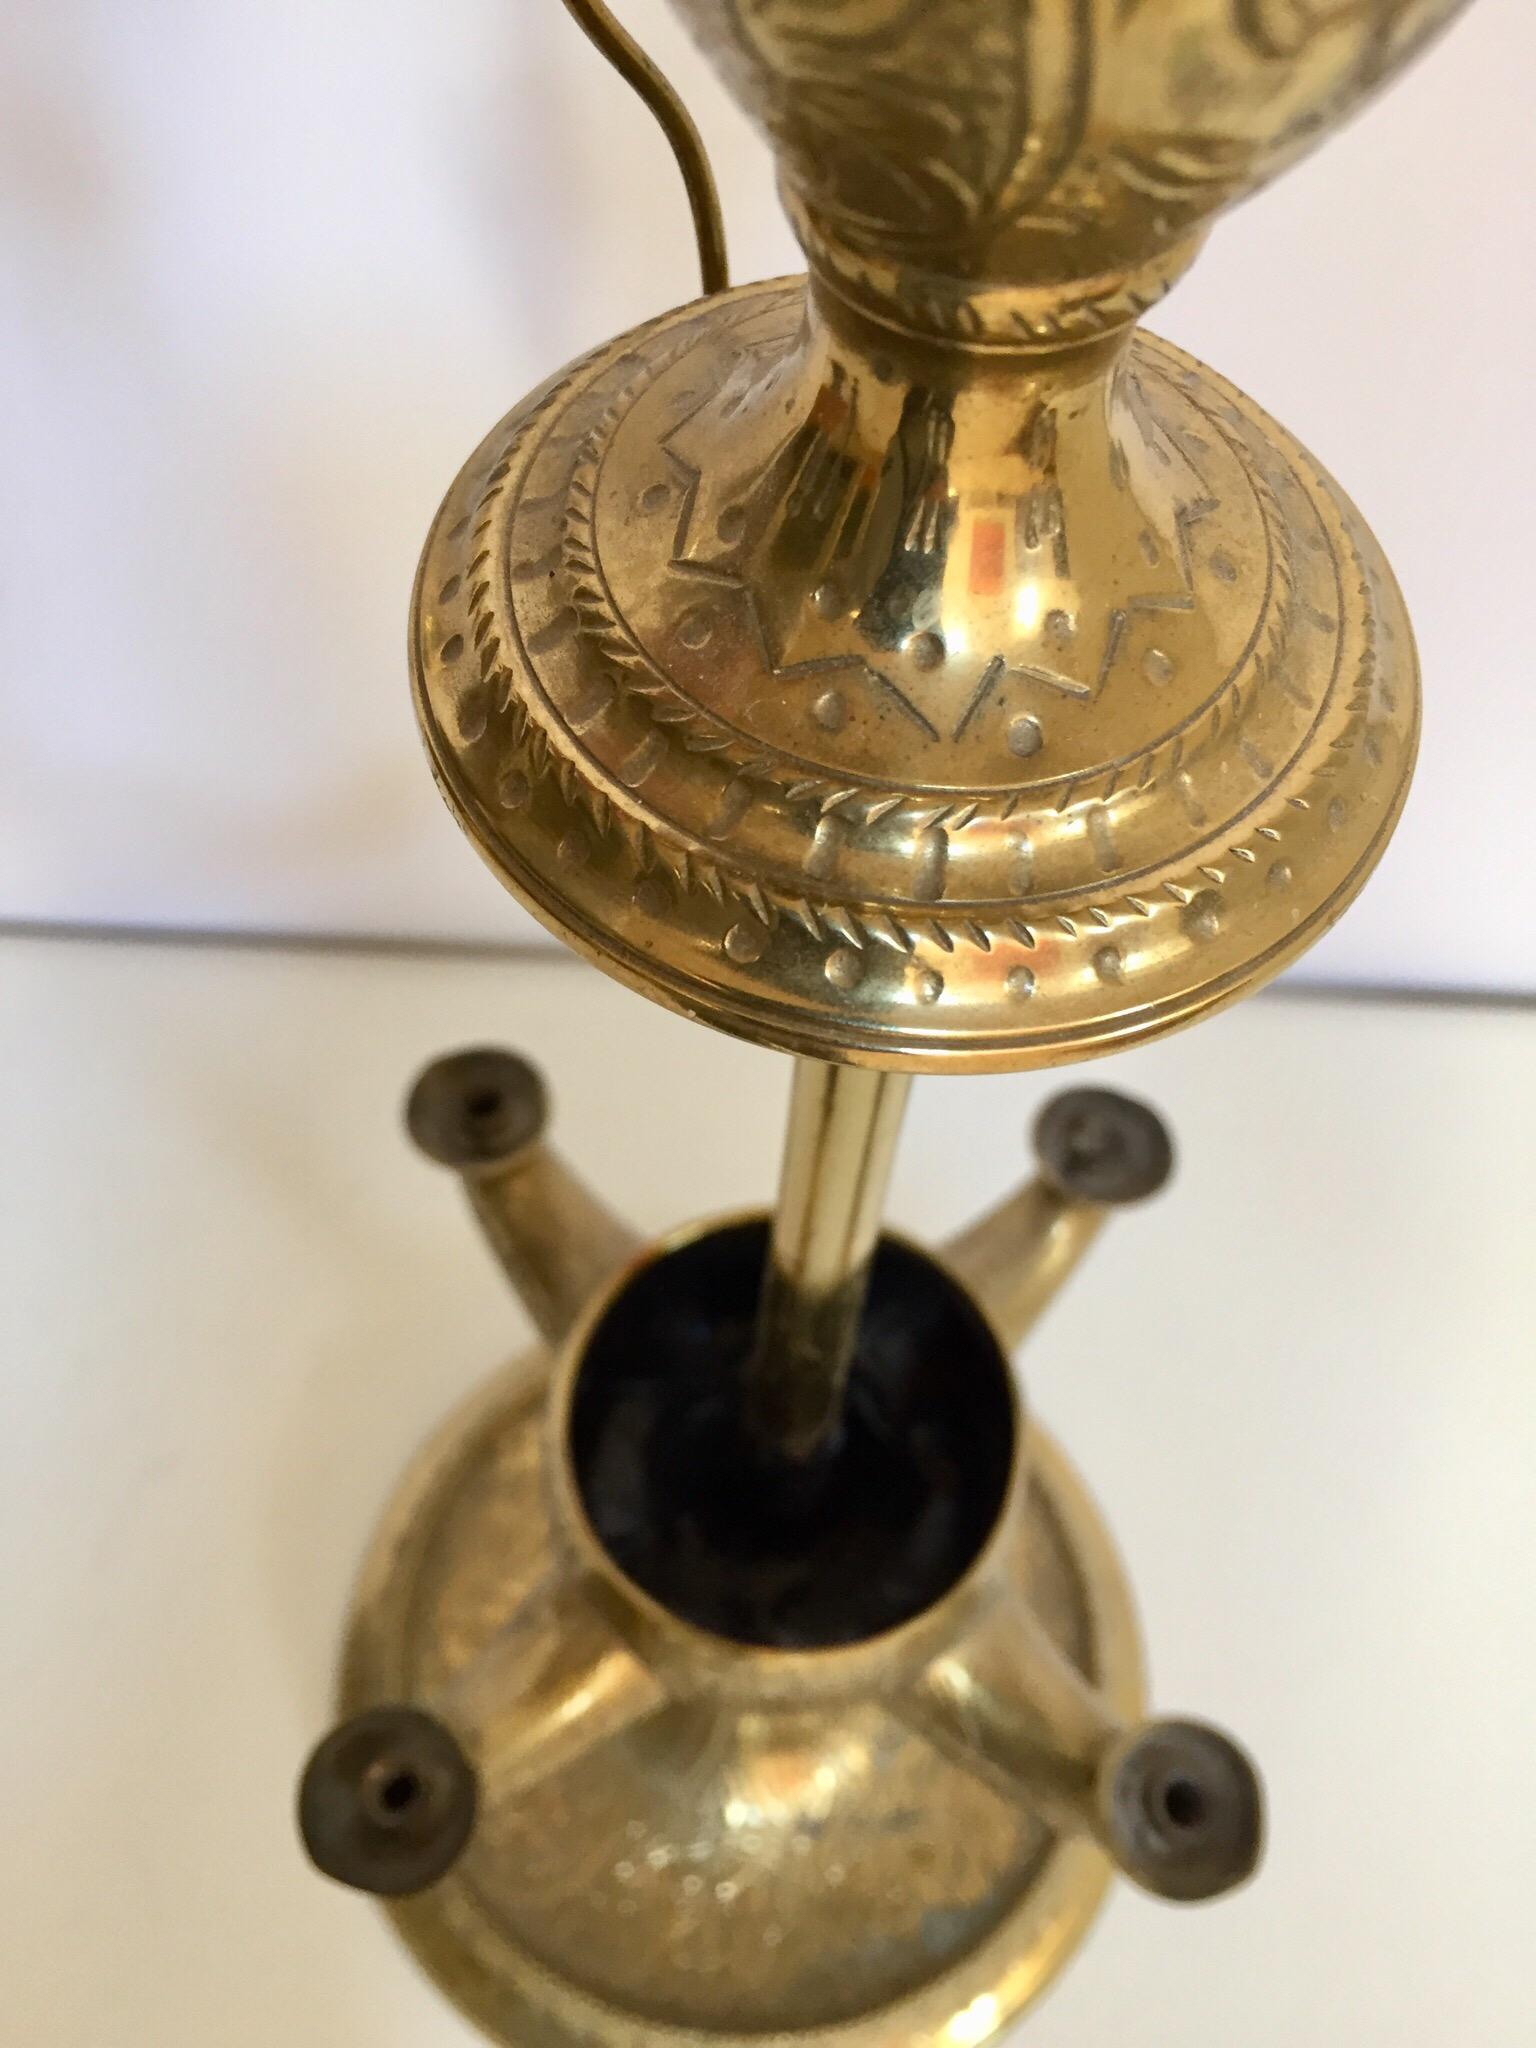 Lampe à huile de temple indien Anglo Raj antique, début du 20e siècle, en laiton.
Lampe à huile de baleine avec 4 brûleurs à mèche.
Une patine fantastique et une grande échelle.
Utilisé pour les cérémonies sacrées dans les temples ou à la